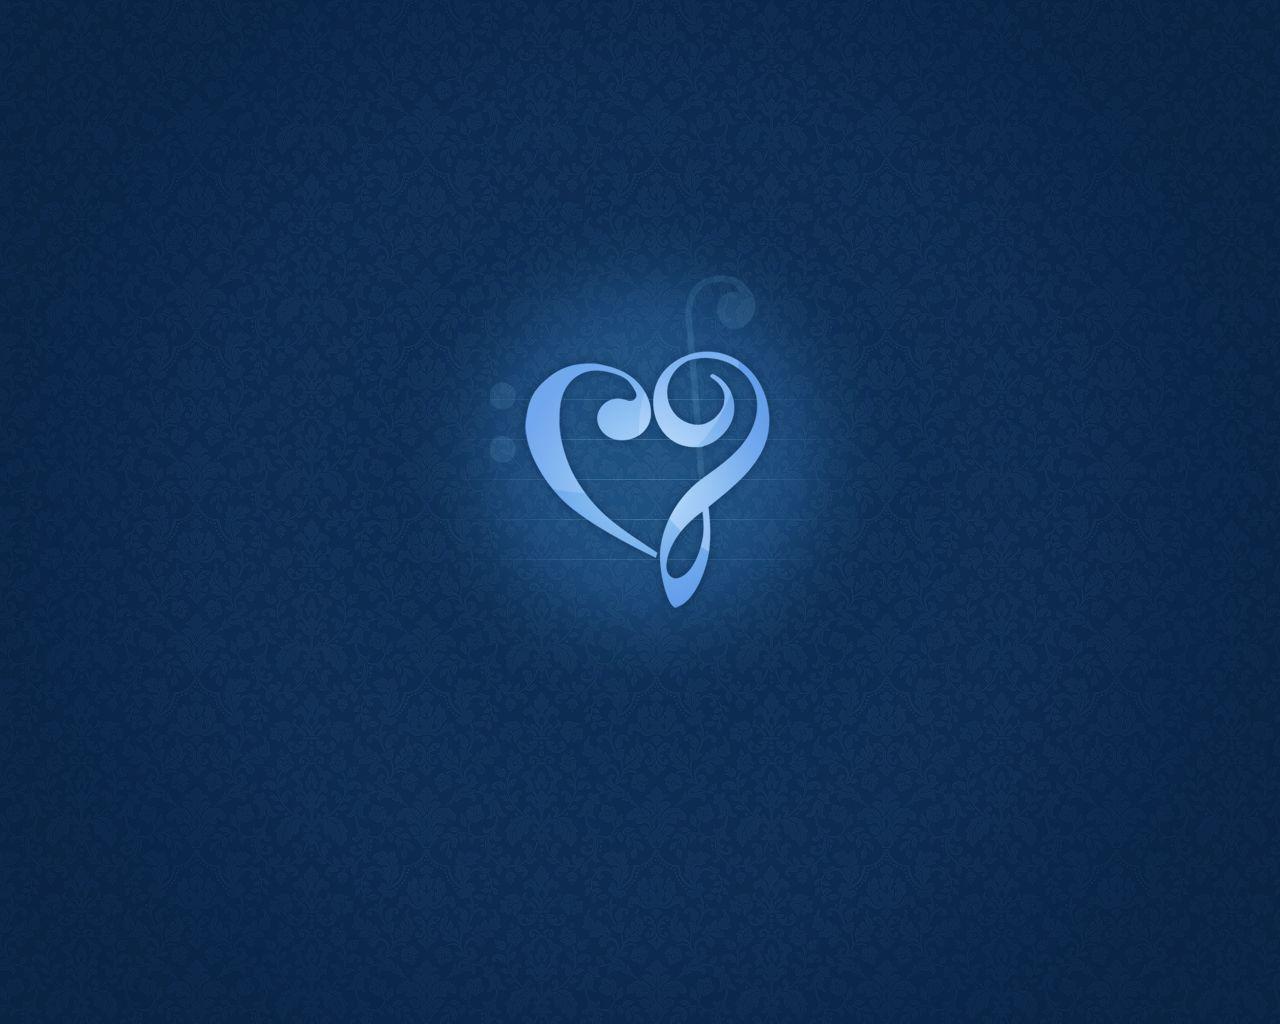 Blue Heart Wallpaper